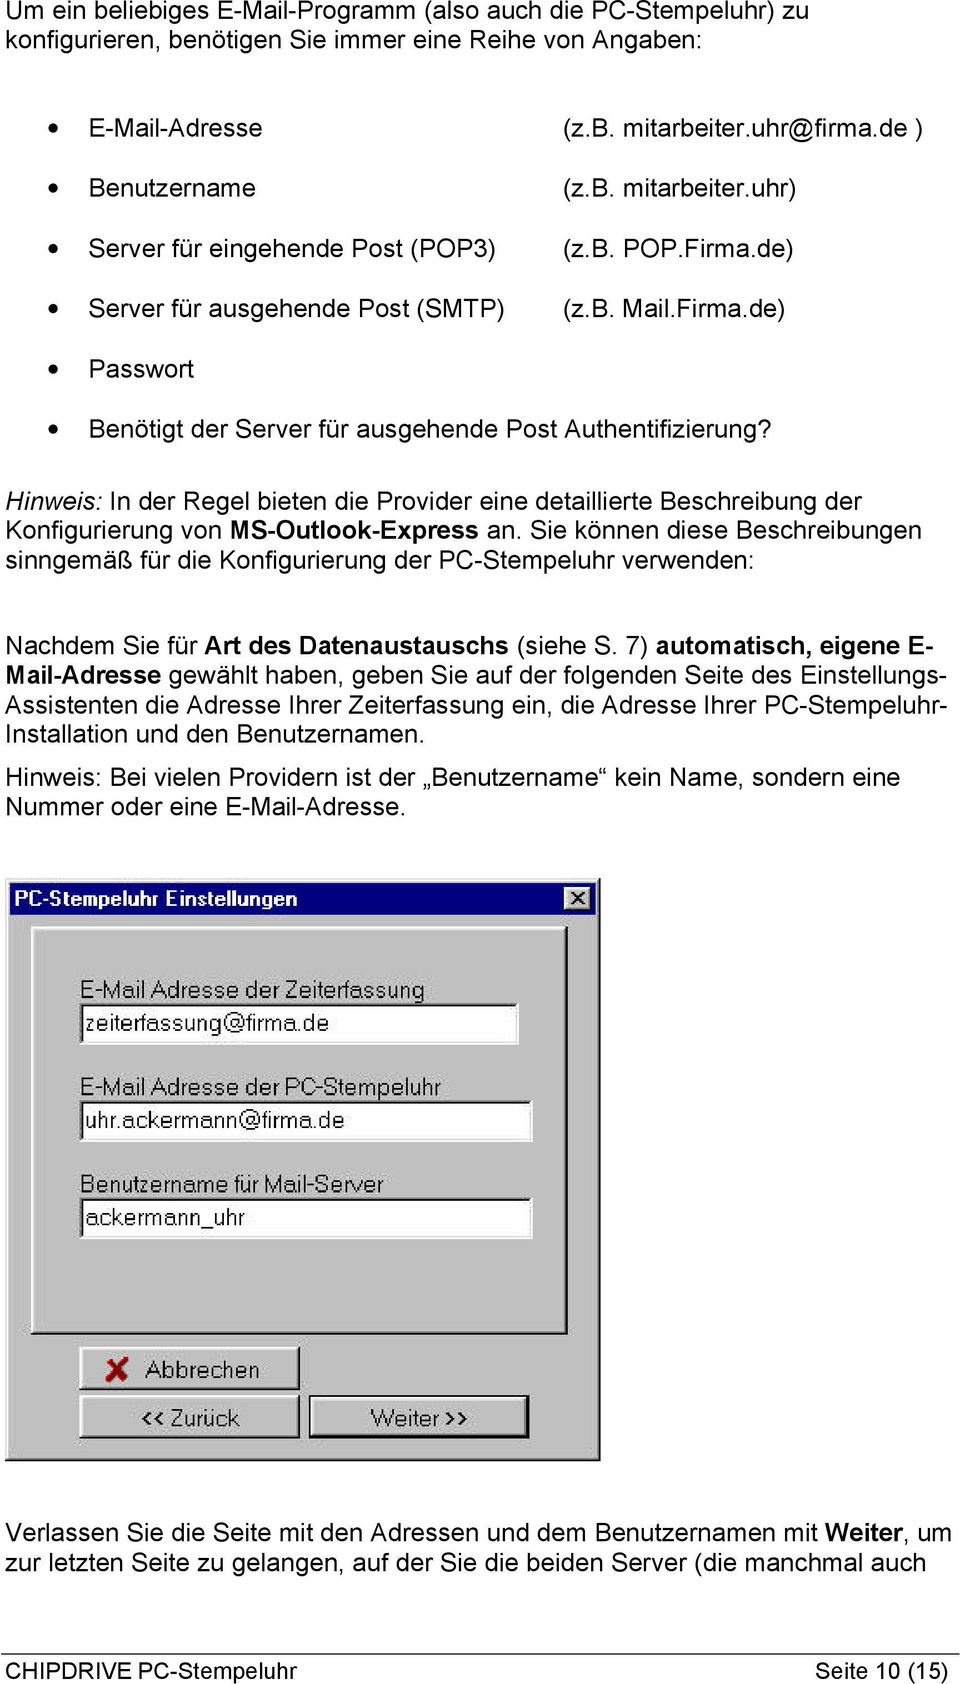 Hinweis: In der Regel bieten die Provider eine detaillierte Beschreibung der Konfigurierung von MS-Outlook-Express an.